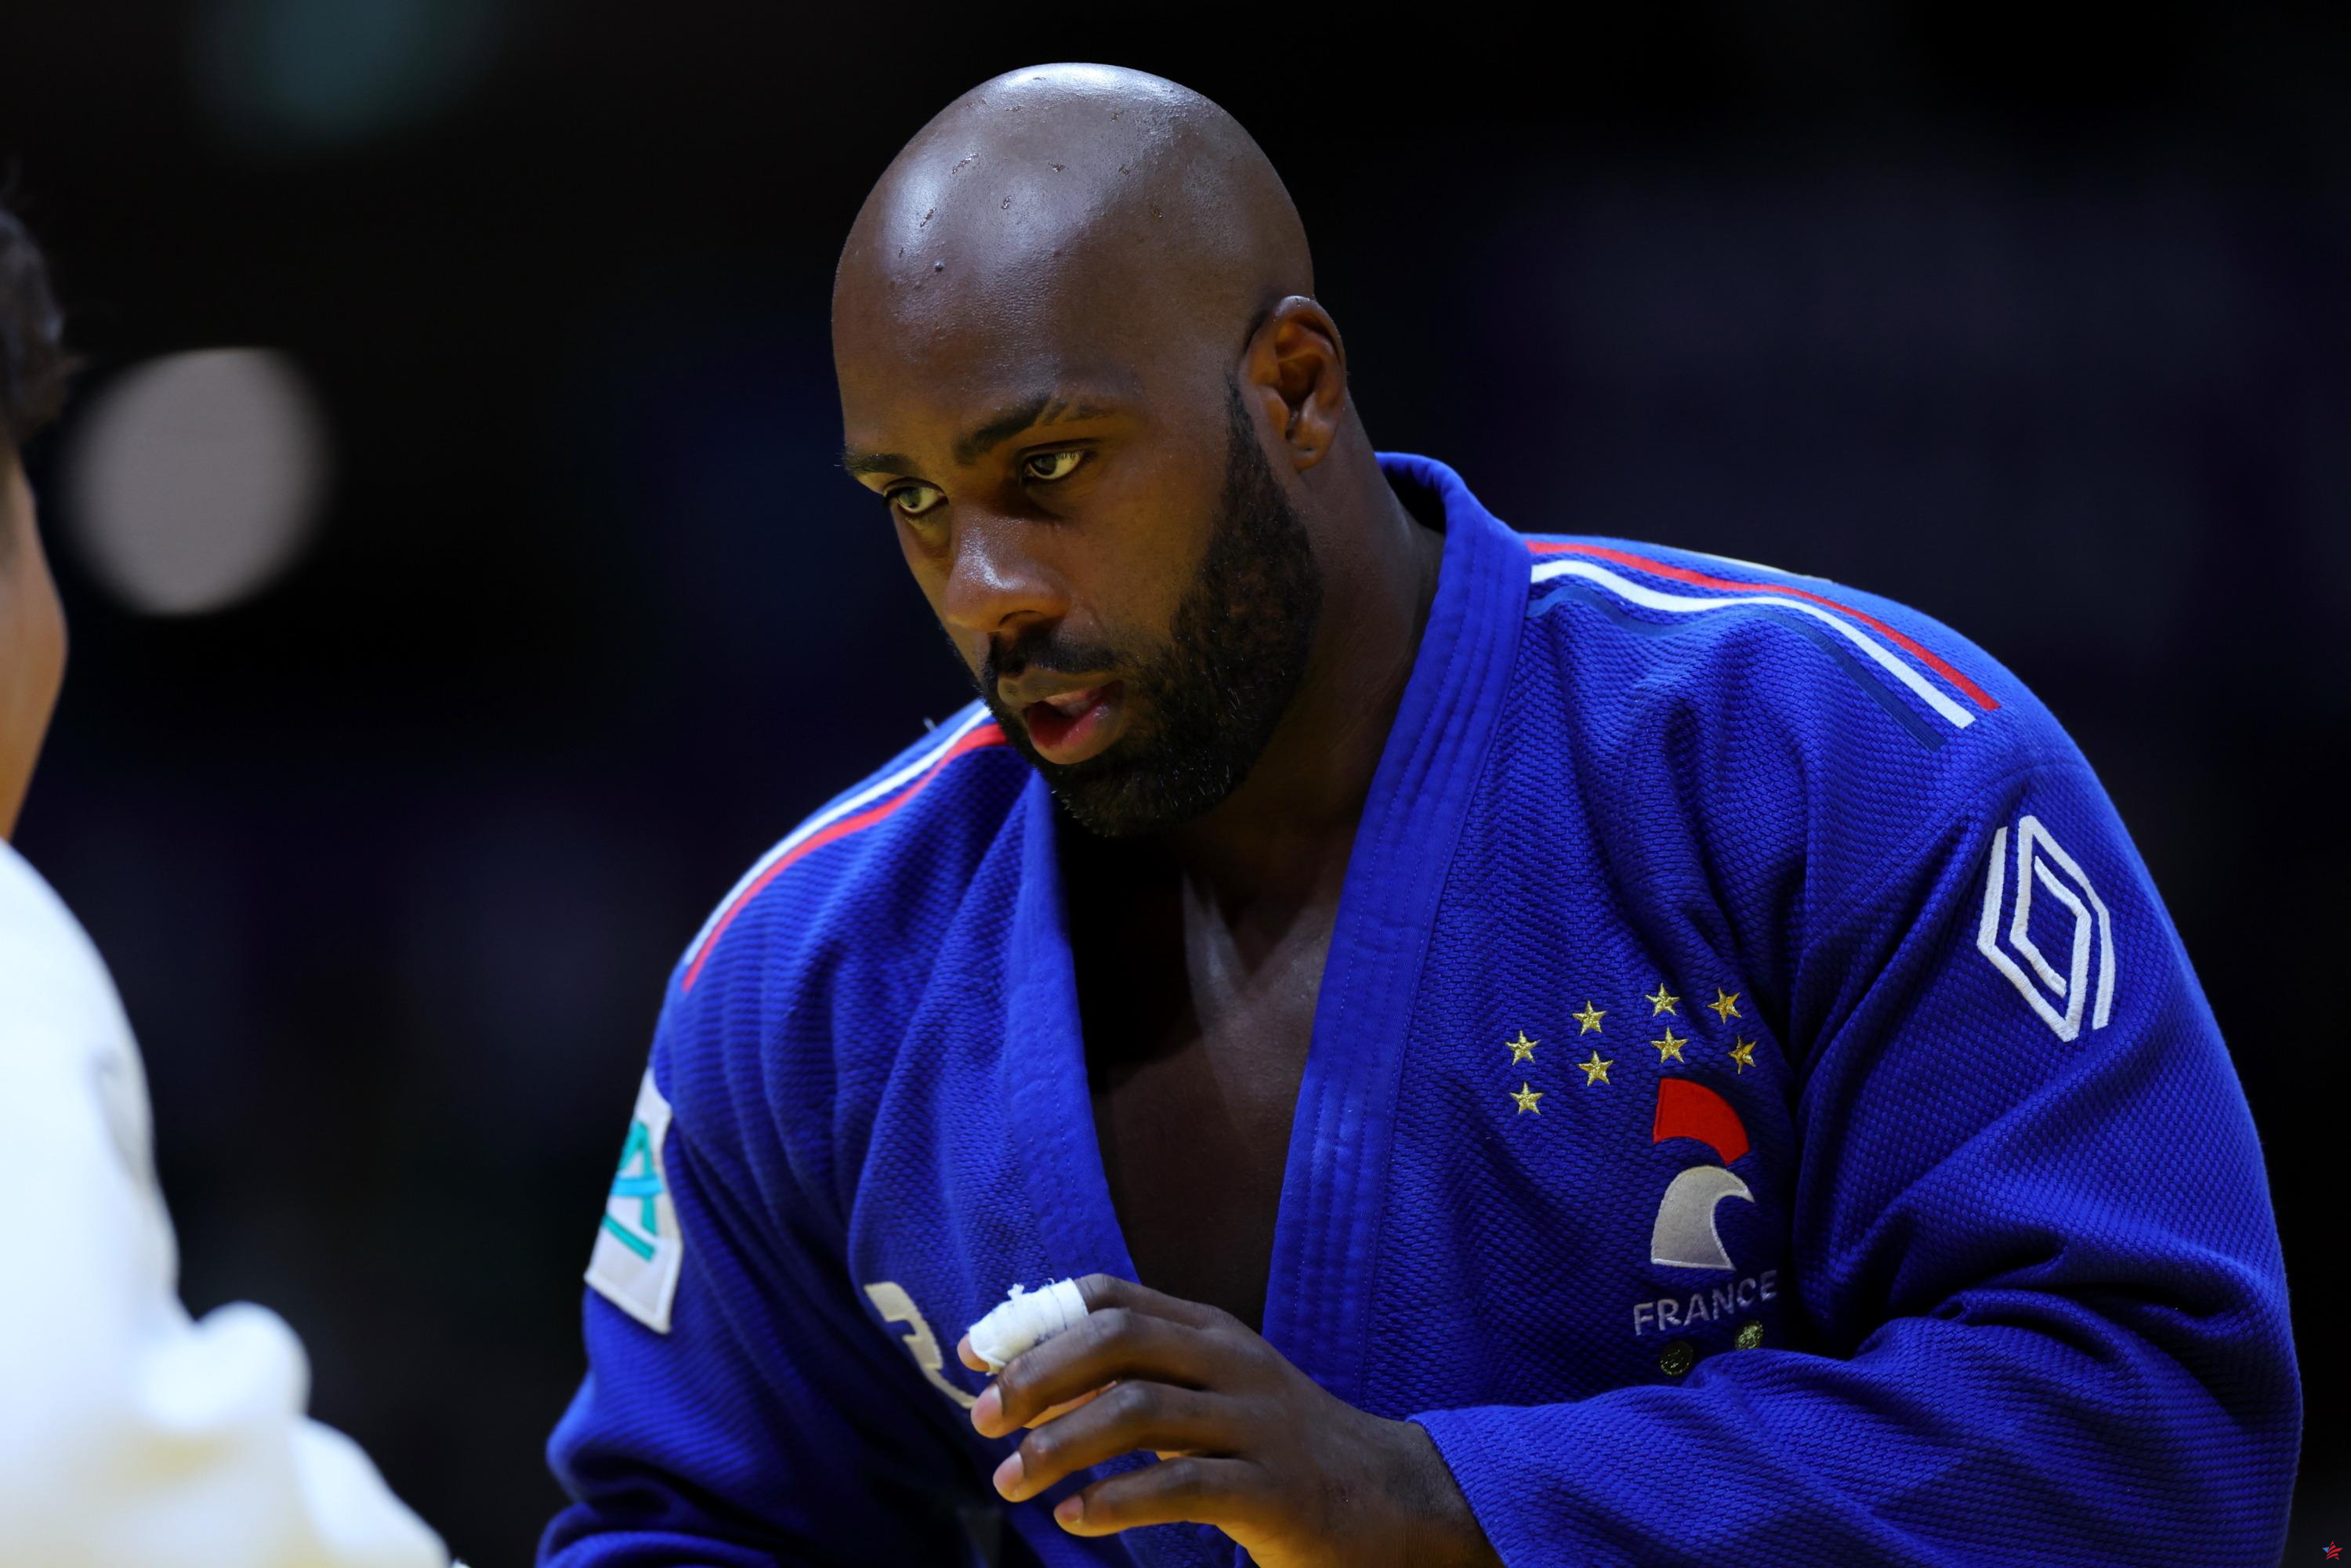 Judo, Grand Slam de París: Teddy Riner en la plaza final